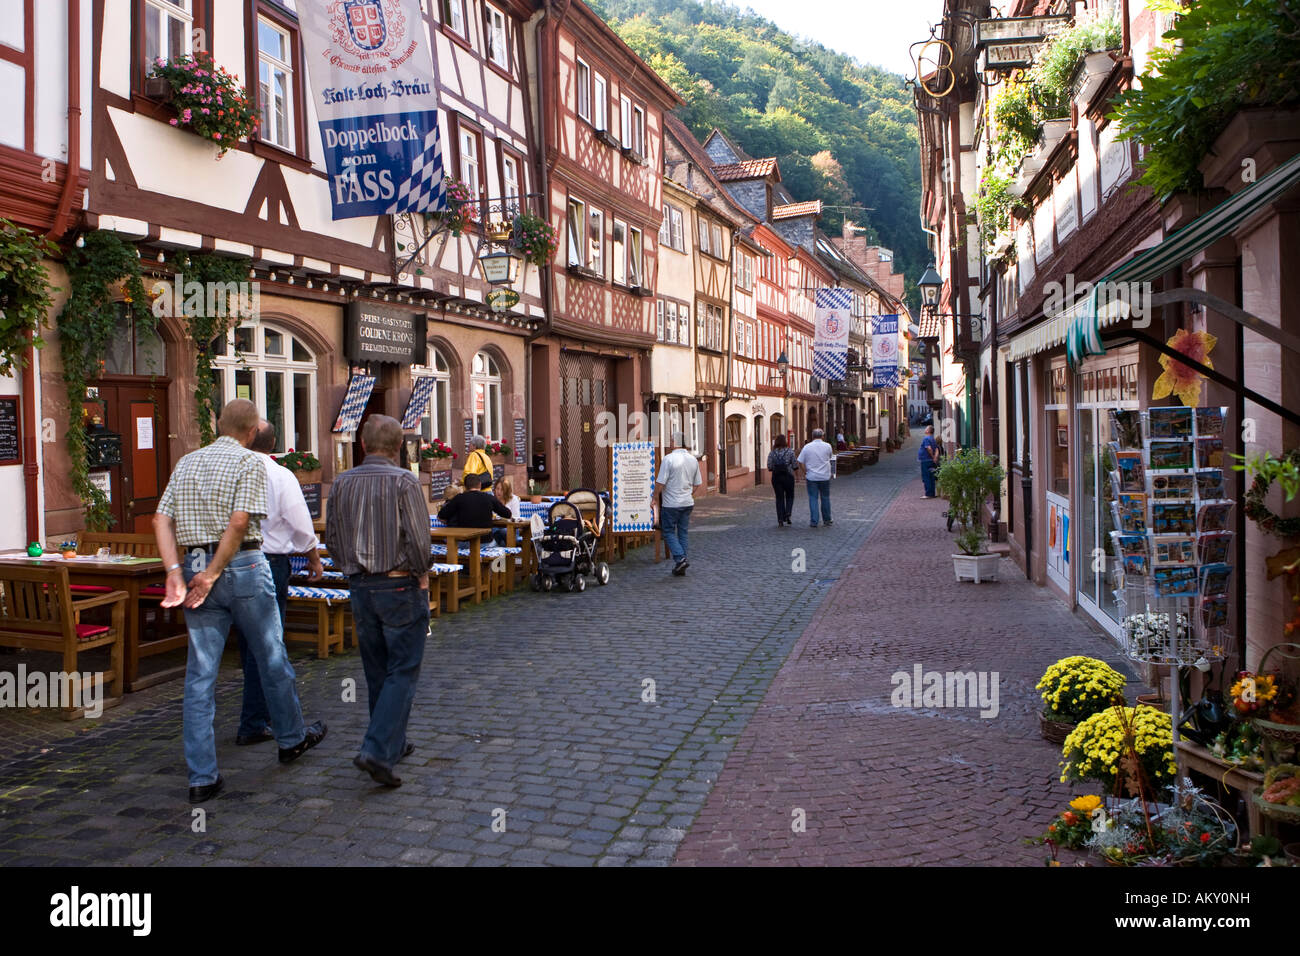 Vieille ville, bien entretenu, maisons à colombages, Miltenberg, Bavière, Allemagne Banque D'Images